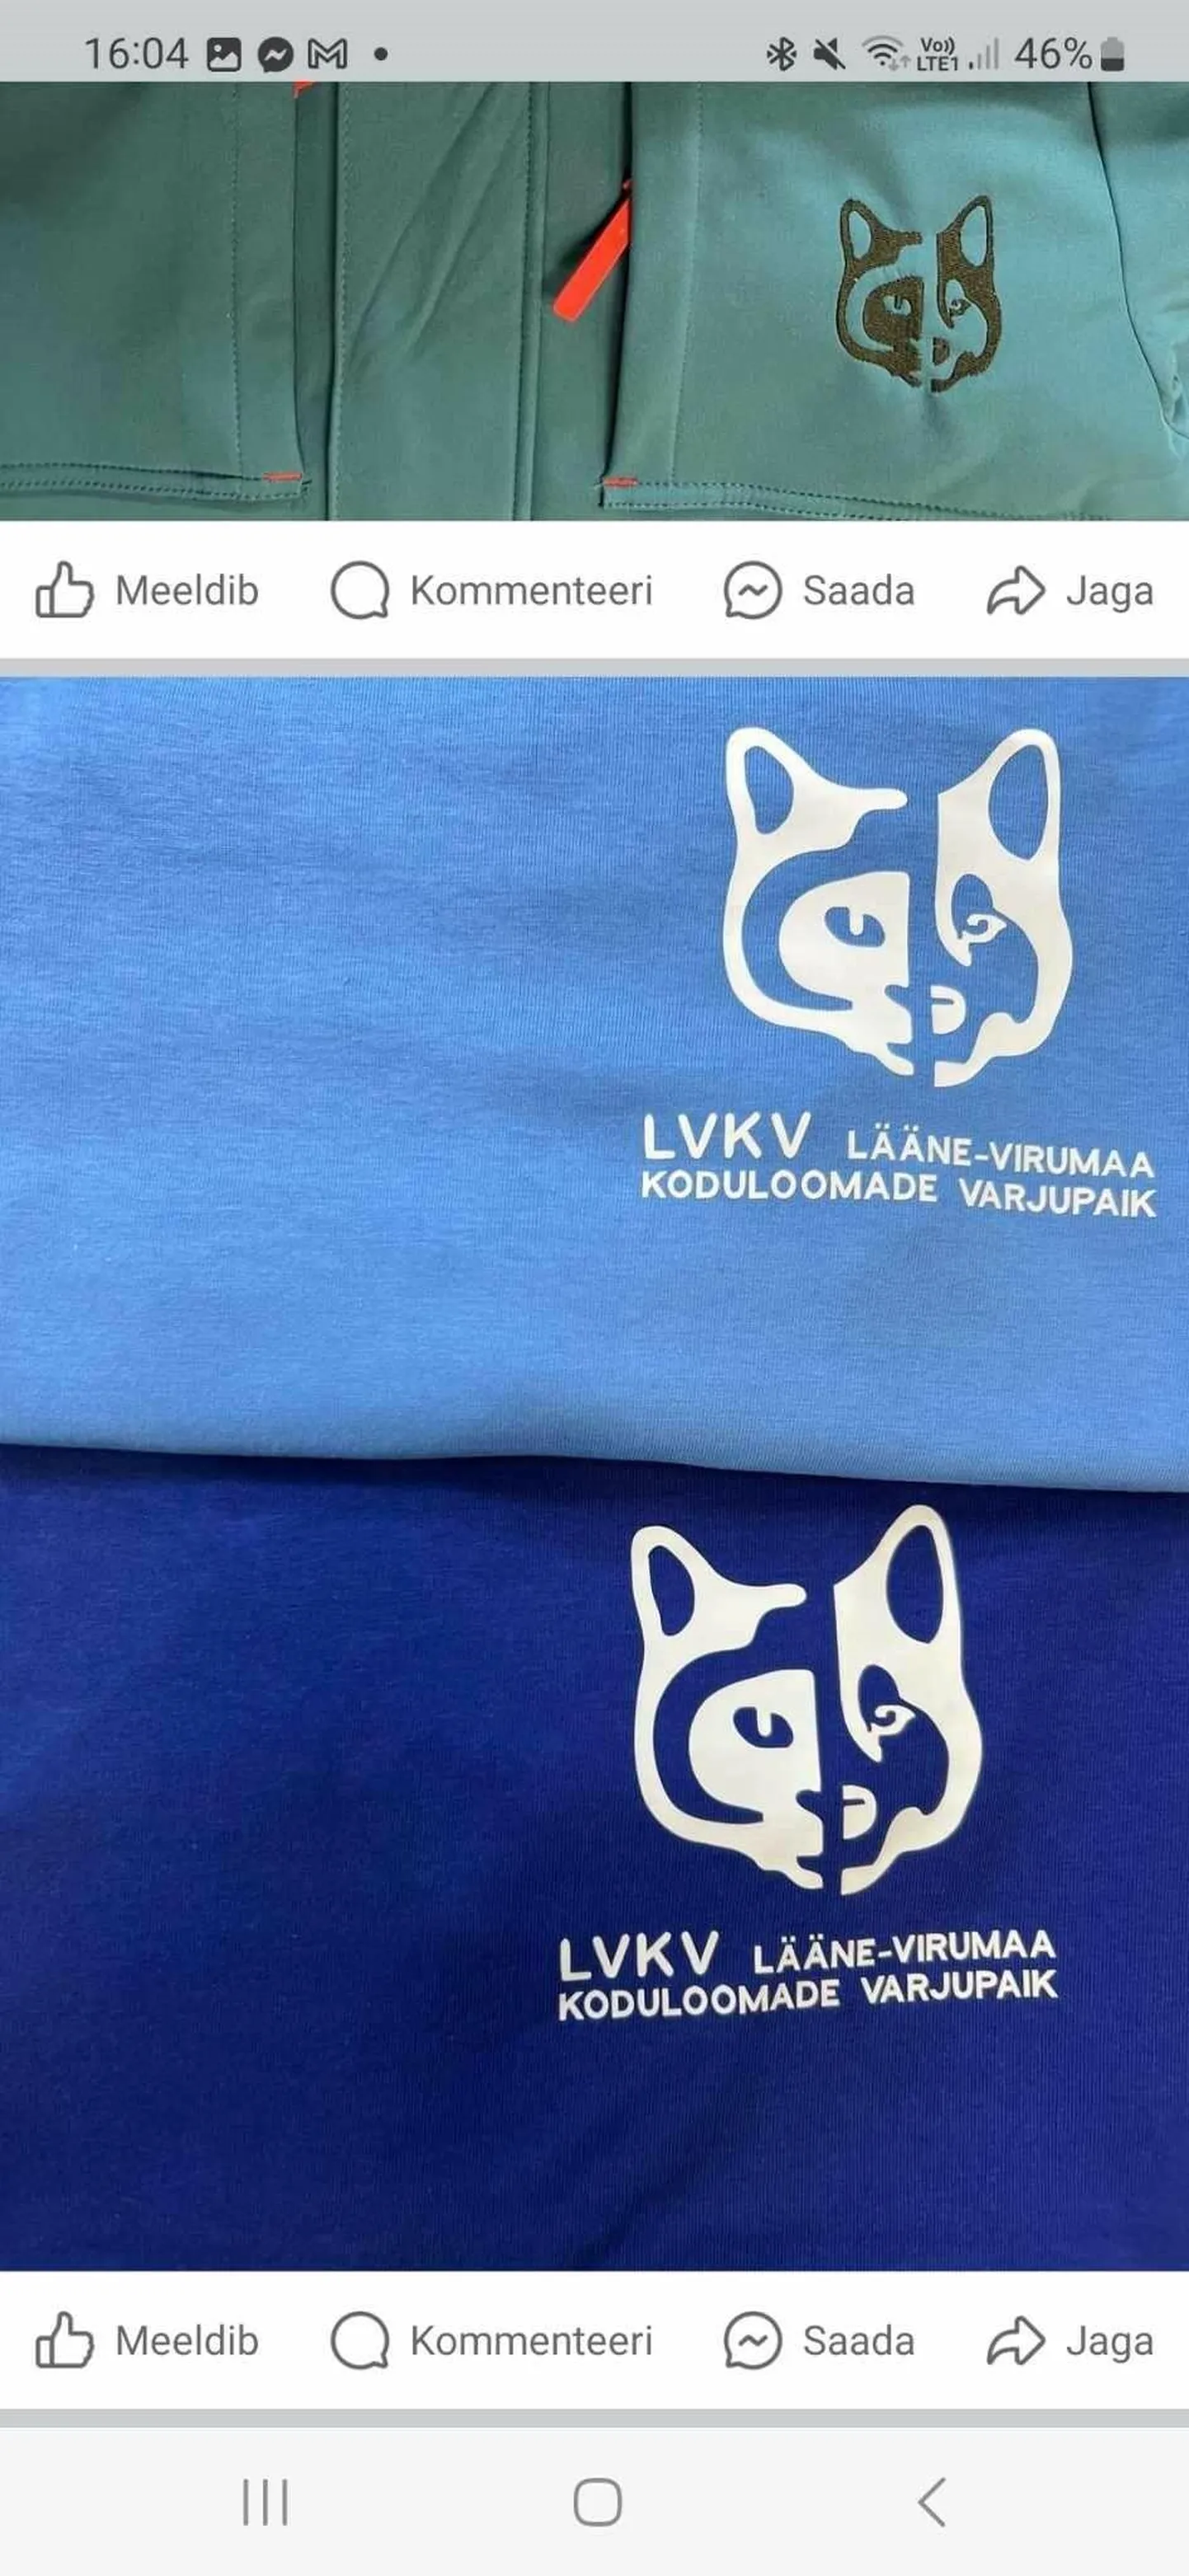 Teet Suur kujundas Lääne-Virumaa loomade varjupaigale logo.